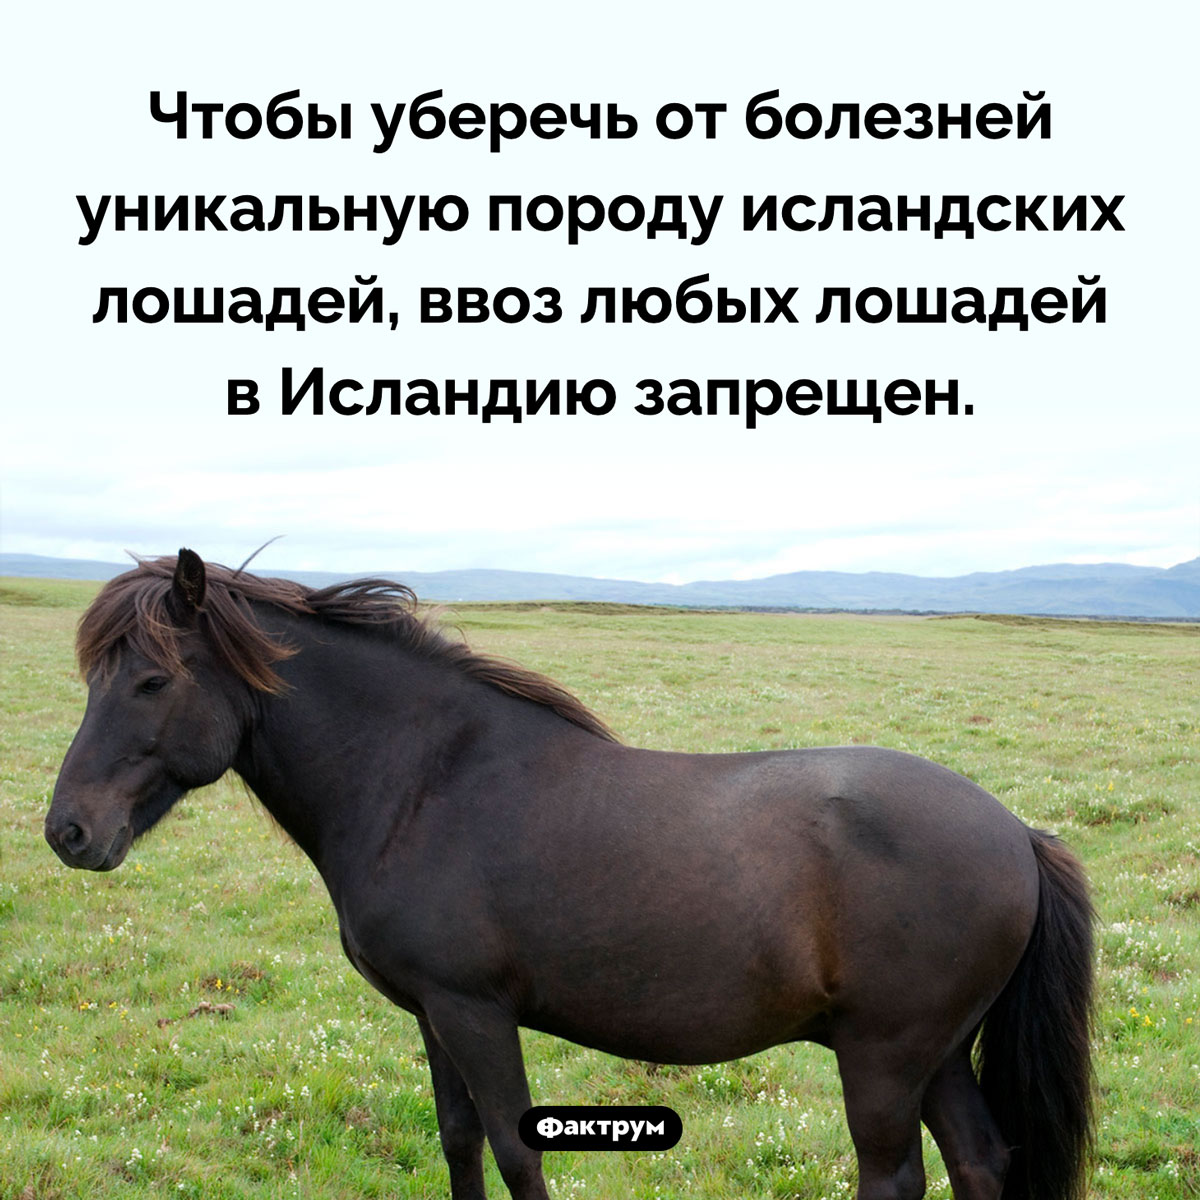 В Исландию запрещено ввозить лошадей. Чтобы уберечь от болезней уникальную породу исландских лошадей, ввоз любых лошадей в Исландию запрещен.